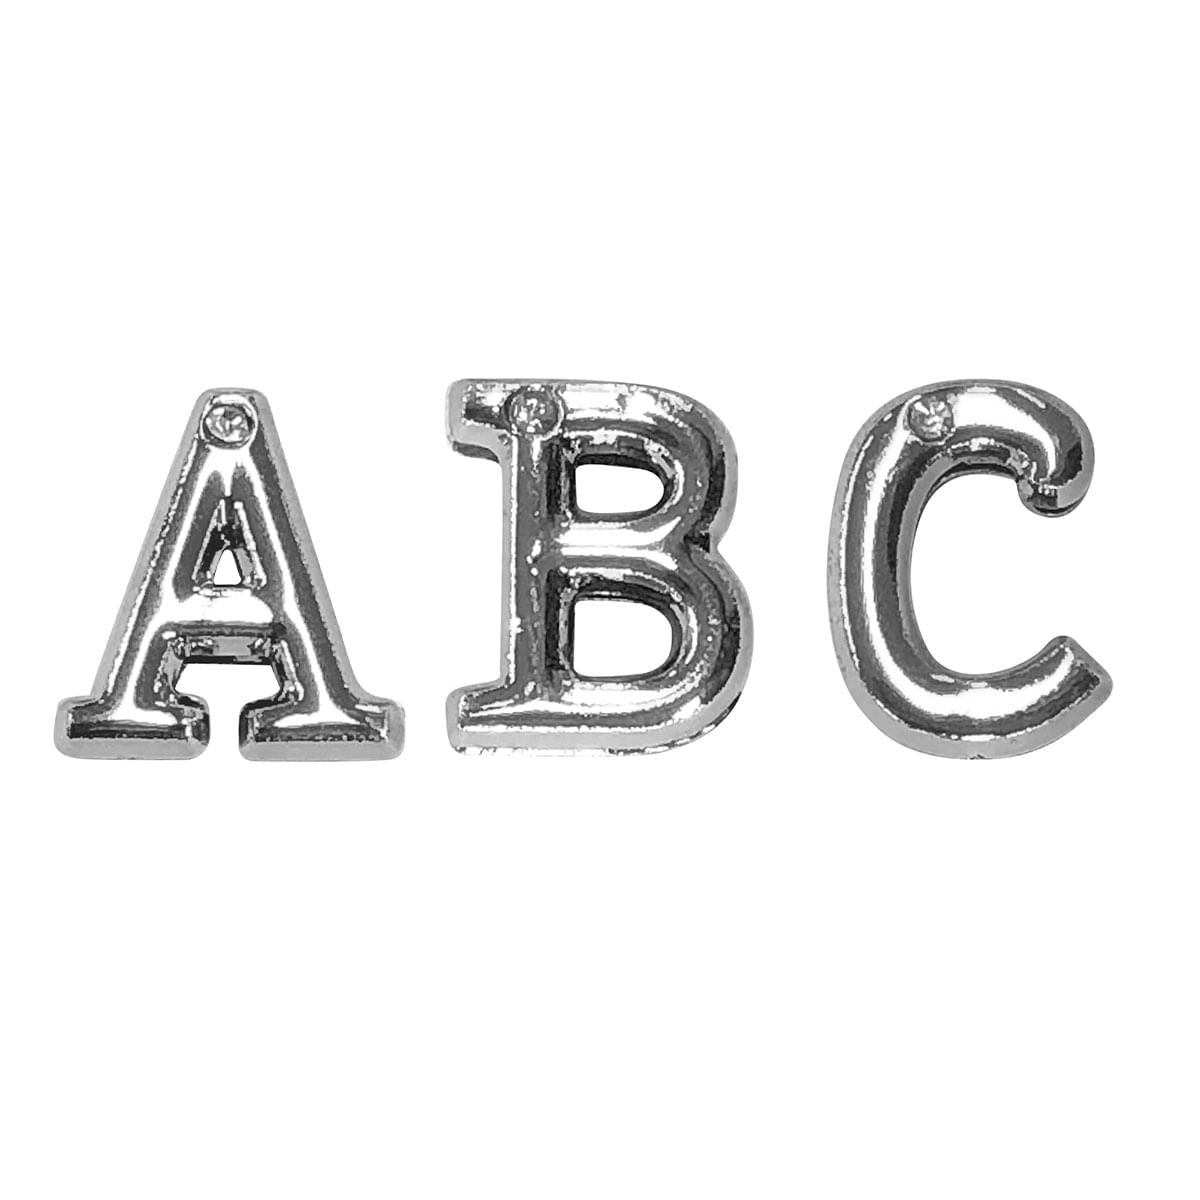 Letras em Metal Cromado com Strass para Personalização do Plug ABC Hard